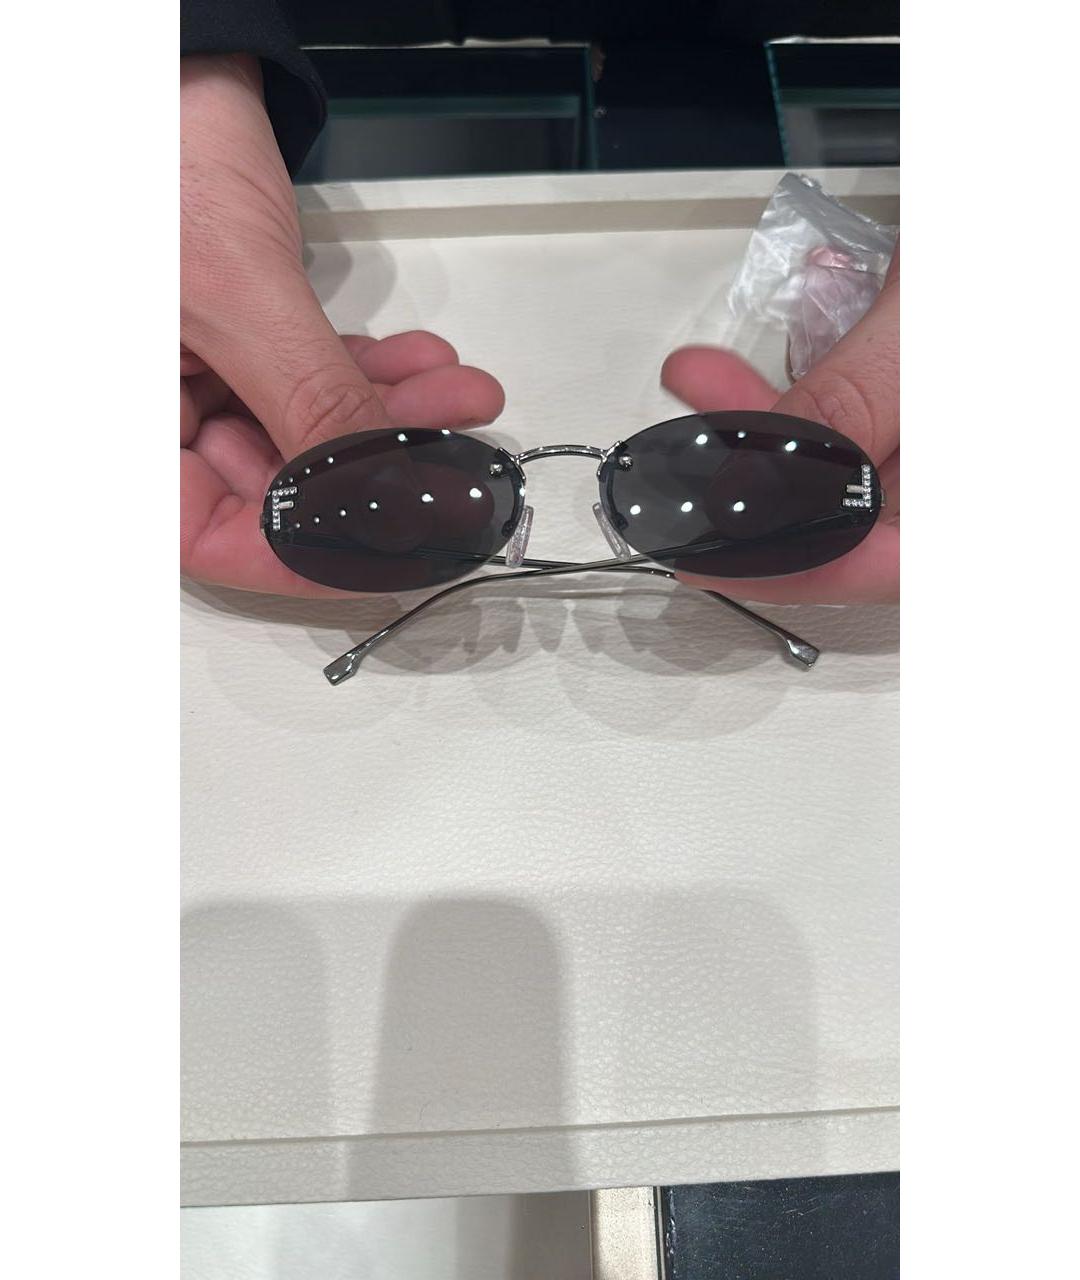 FENDI Черные металлические солнцезащитные очки, фото 2